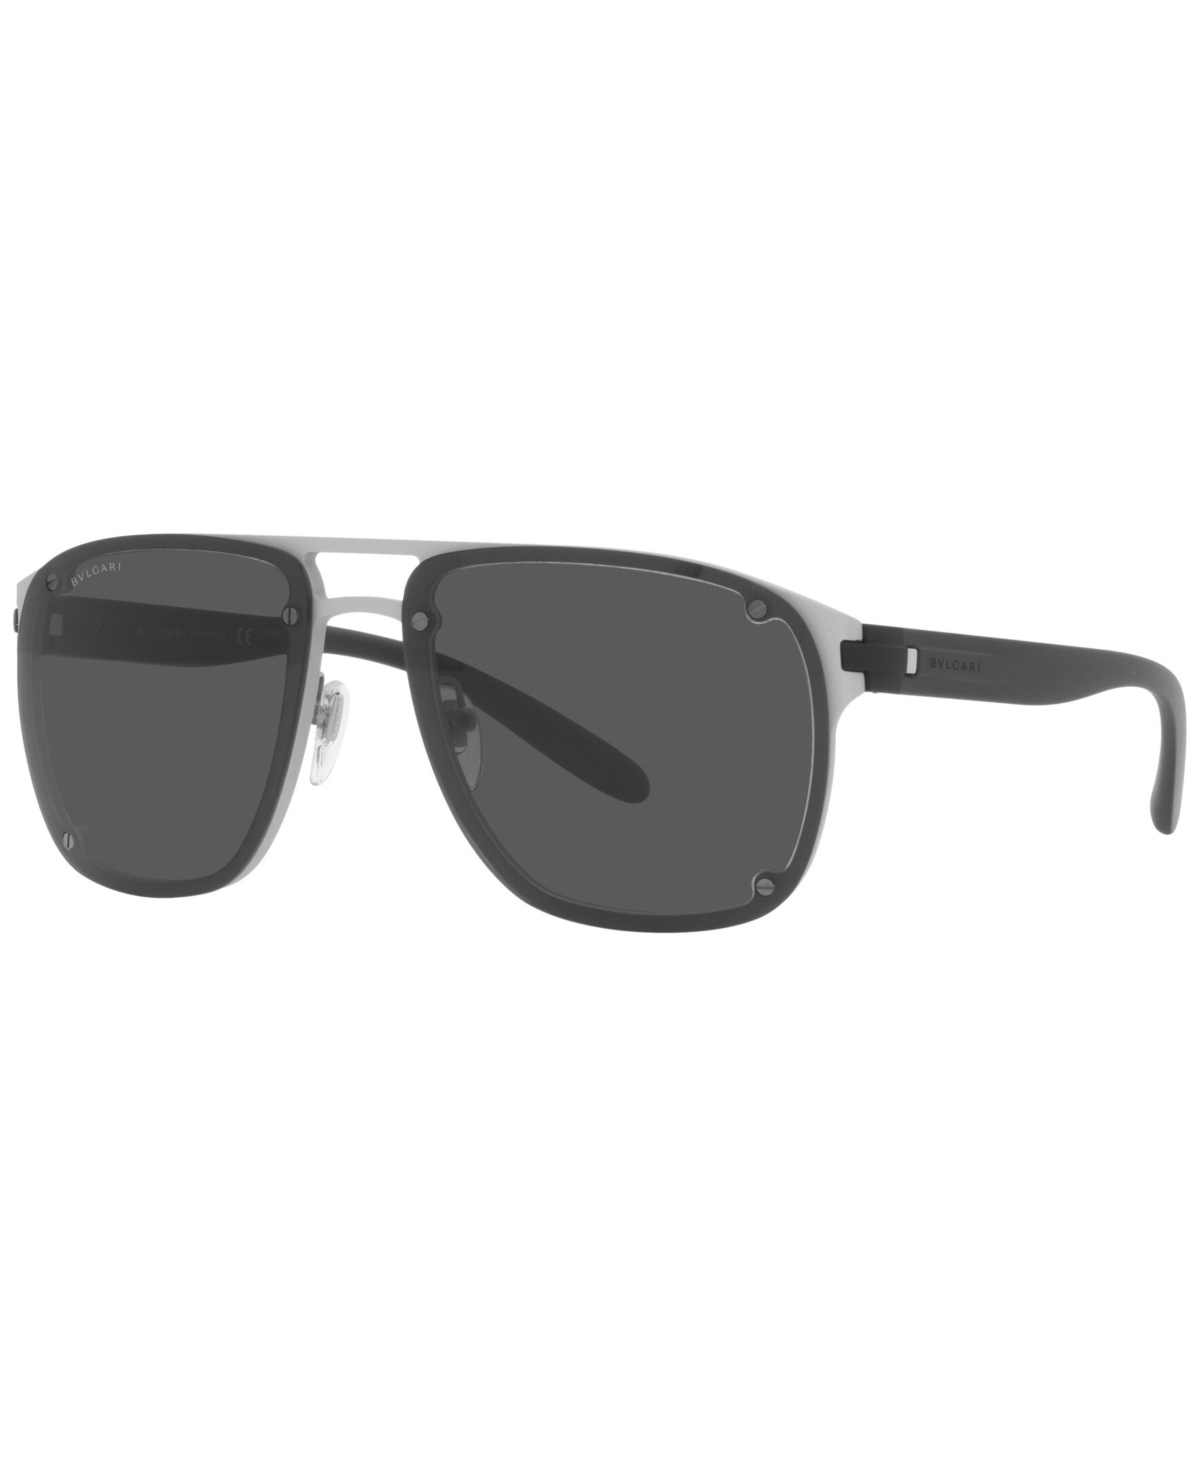 Bvlgari Men's Sunglasses, Bv5058 60 In Matte Aluminium